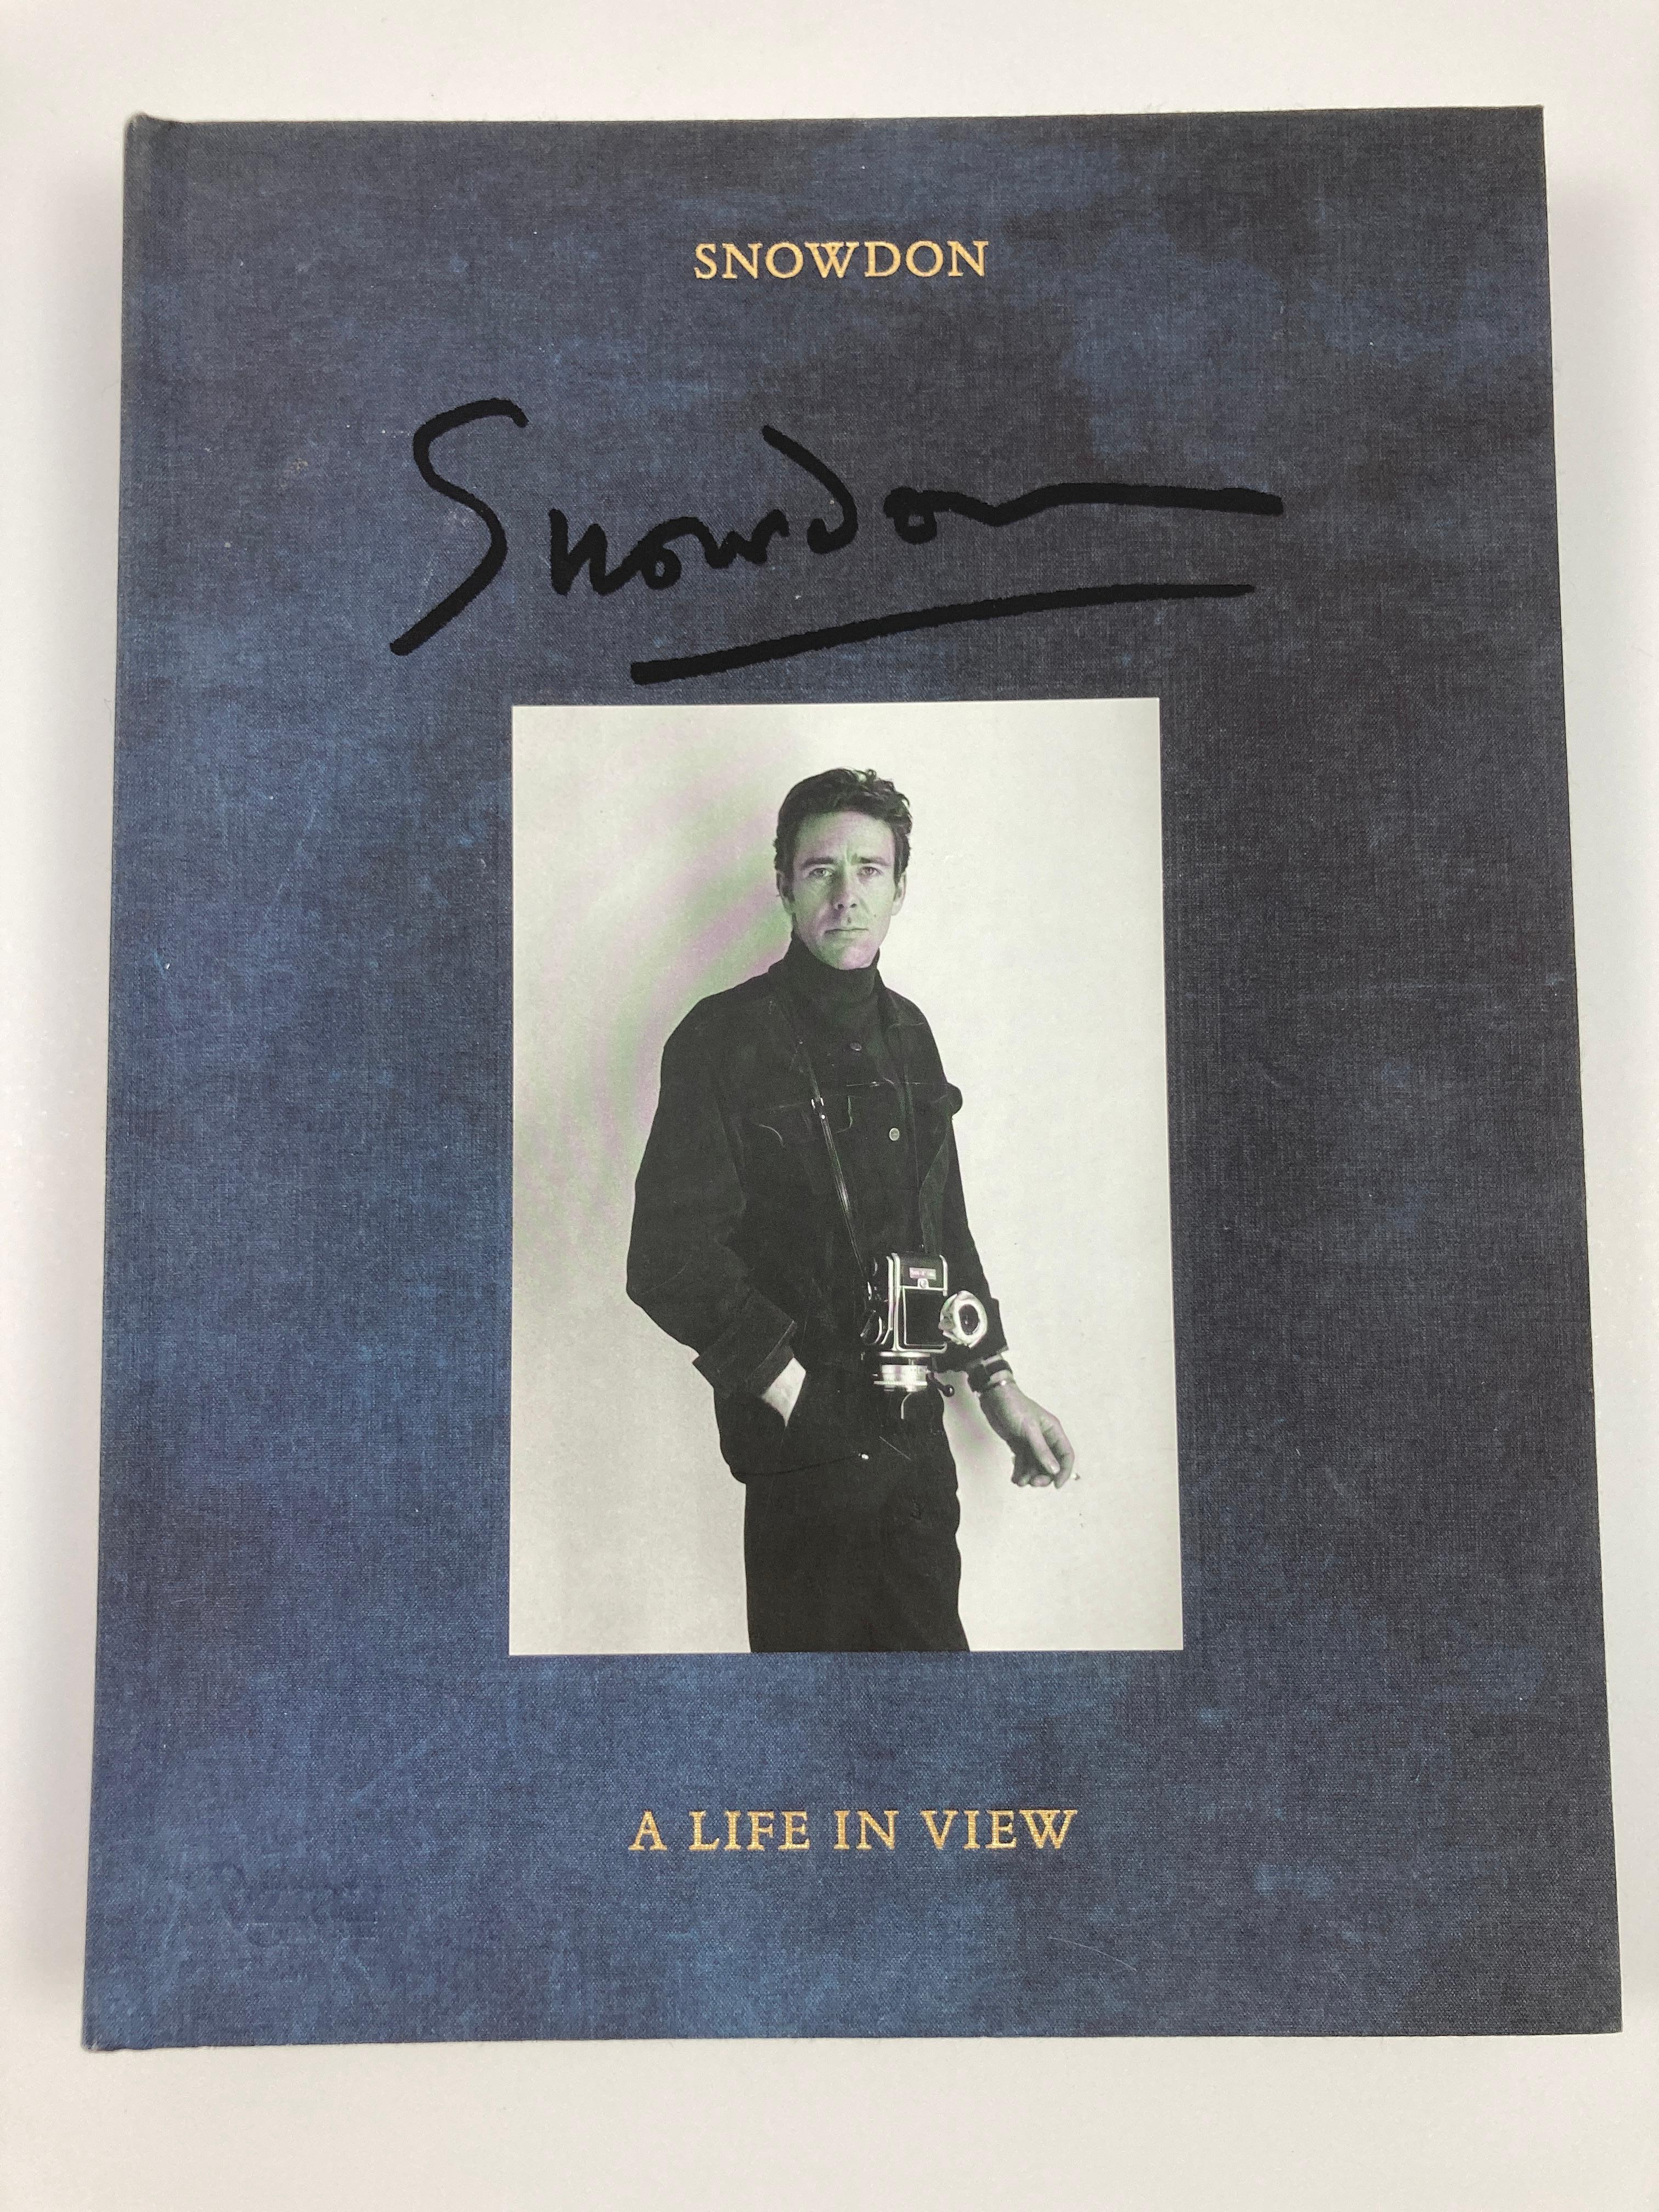 Snowdon: A Life in View Hardcover - Illustrated, September-23-2014. von Antony Armstrong Jones (Autor), Frances Von Hofmannsthal (Herausgeber), Patrick Kinmonth (Einleitung), Graydon Carter (Vorwort), Tom Ford (Mitwirkender).
Dies ist eine